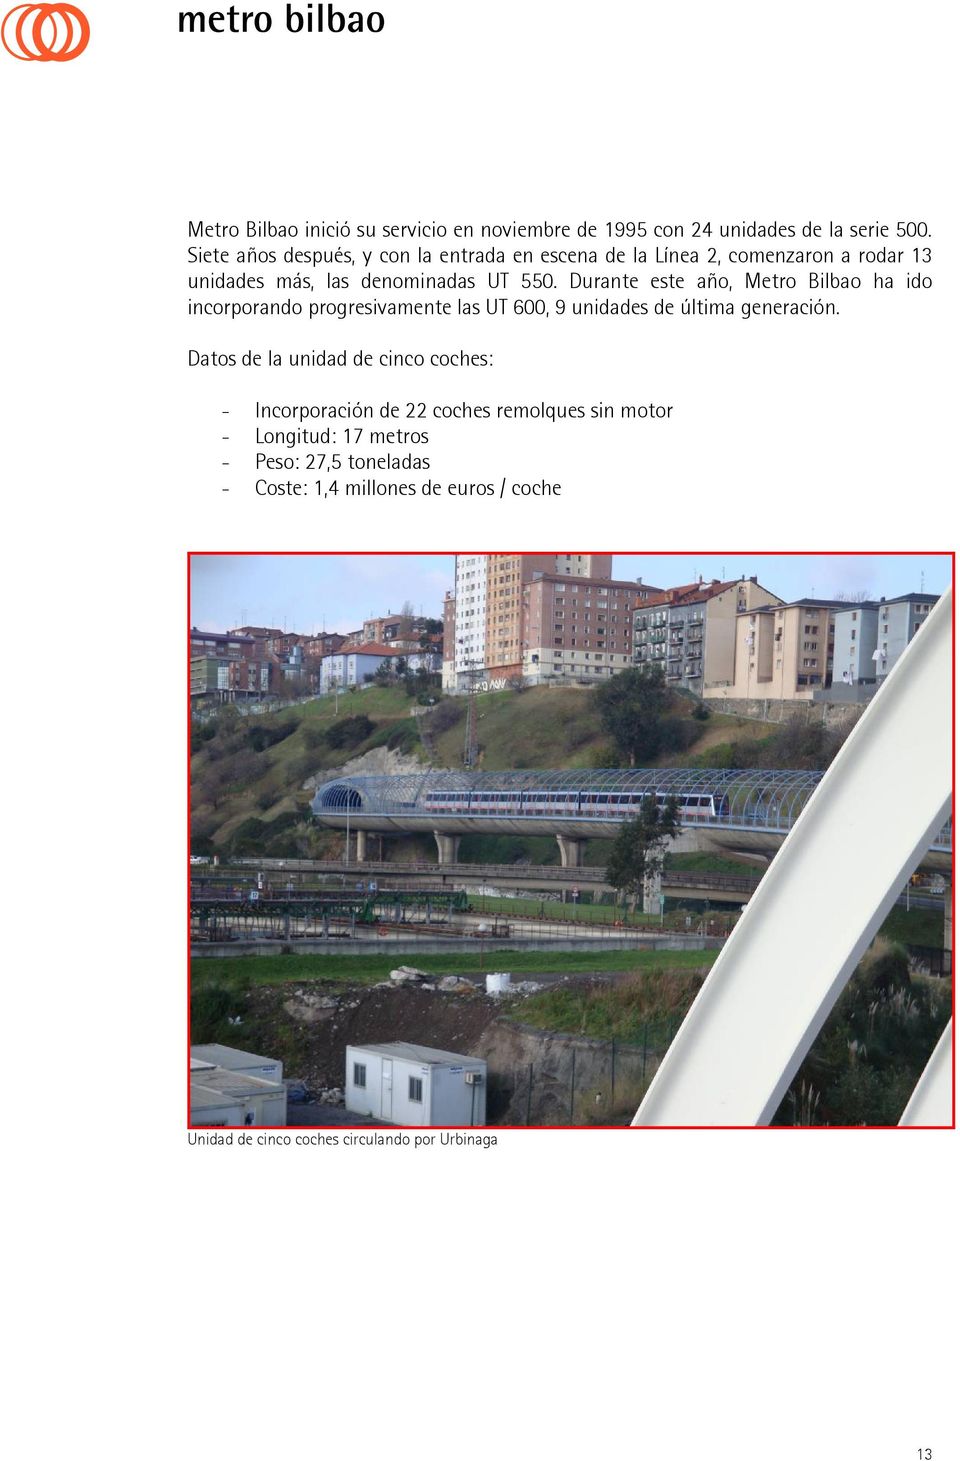 Durante este año, Metro Bilbao ha ido incorporando progresivamente las UT 600, 9 unidades de última generación.